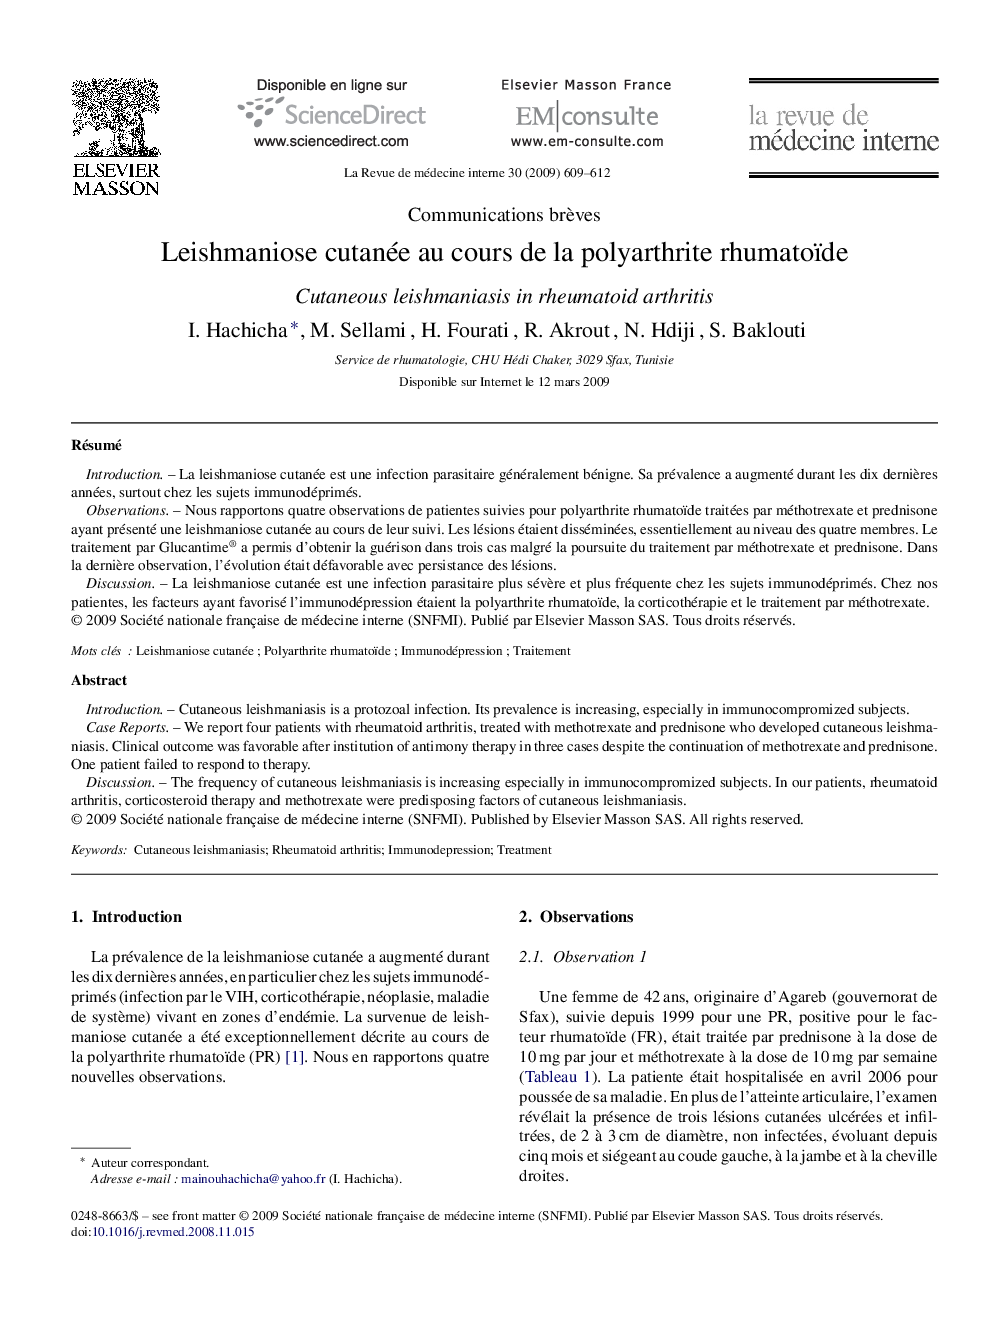 Leishmaniose cutanée au cours de la polyarthrite rhumatoïde